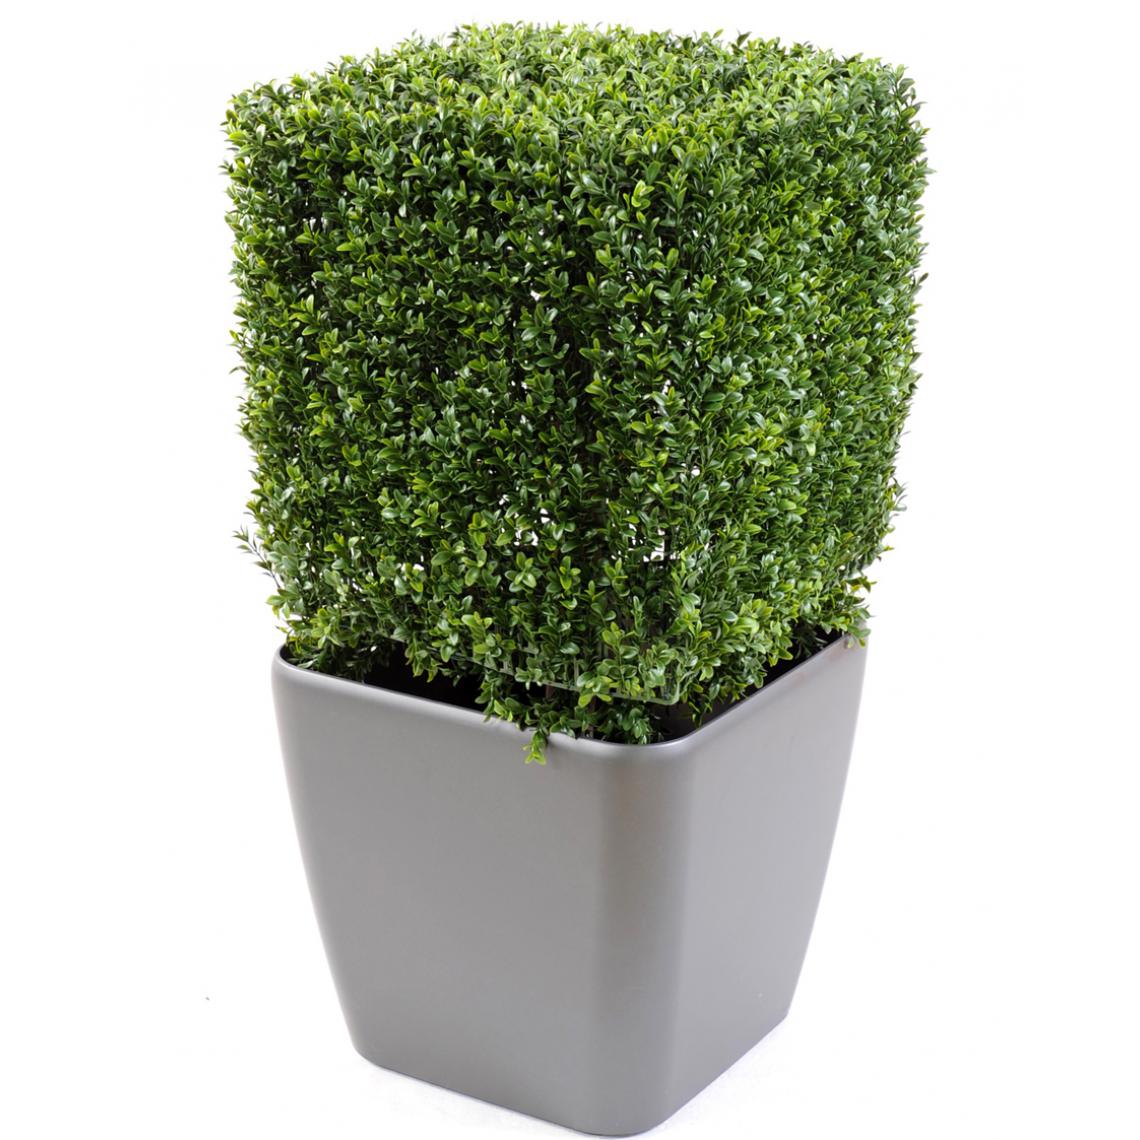 Pegane - Plante artificielle haute gamme Spécial extérieur, Buis carré artificiel couleur vert - Dim : 50 x 32 x 32 cm - Plantes et fleurs artificielles